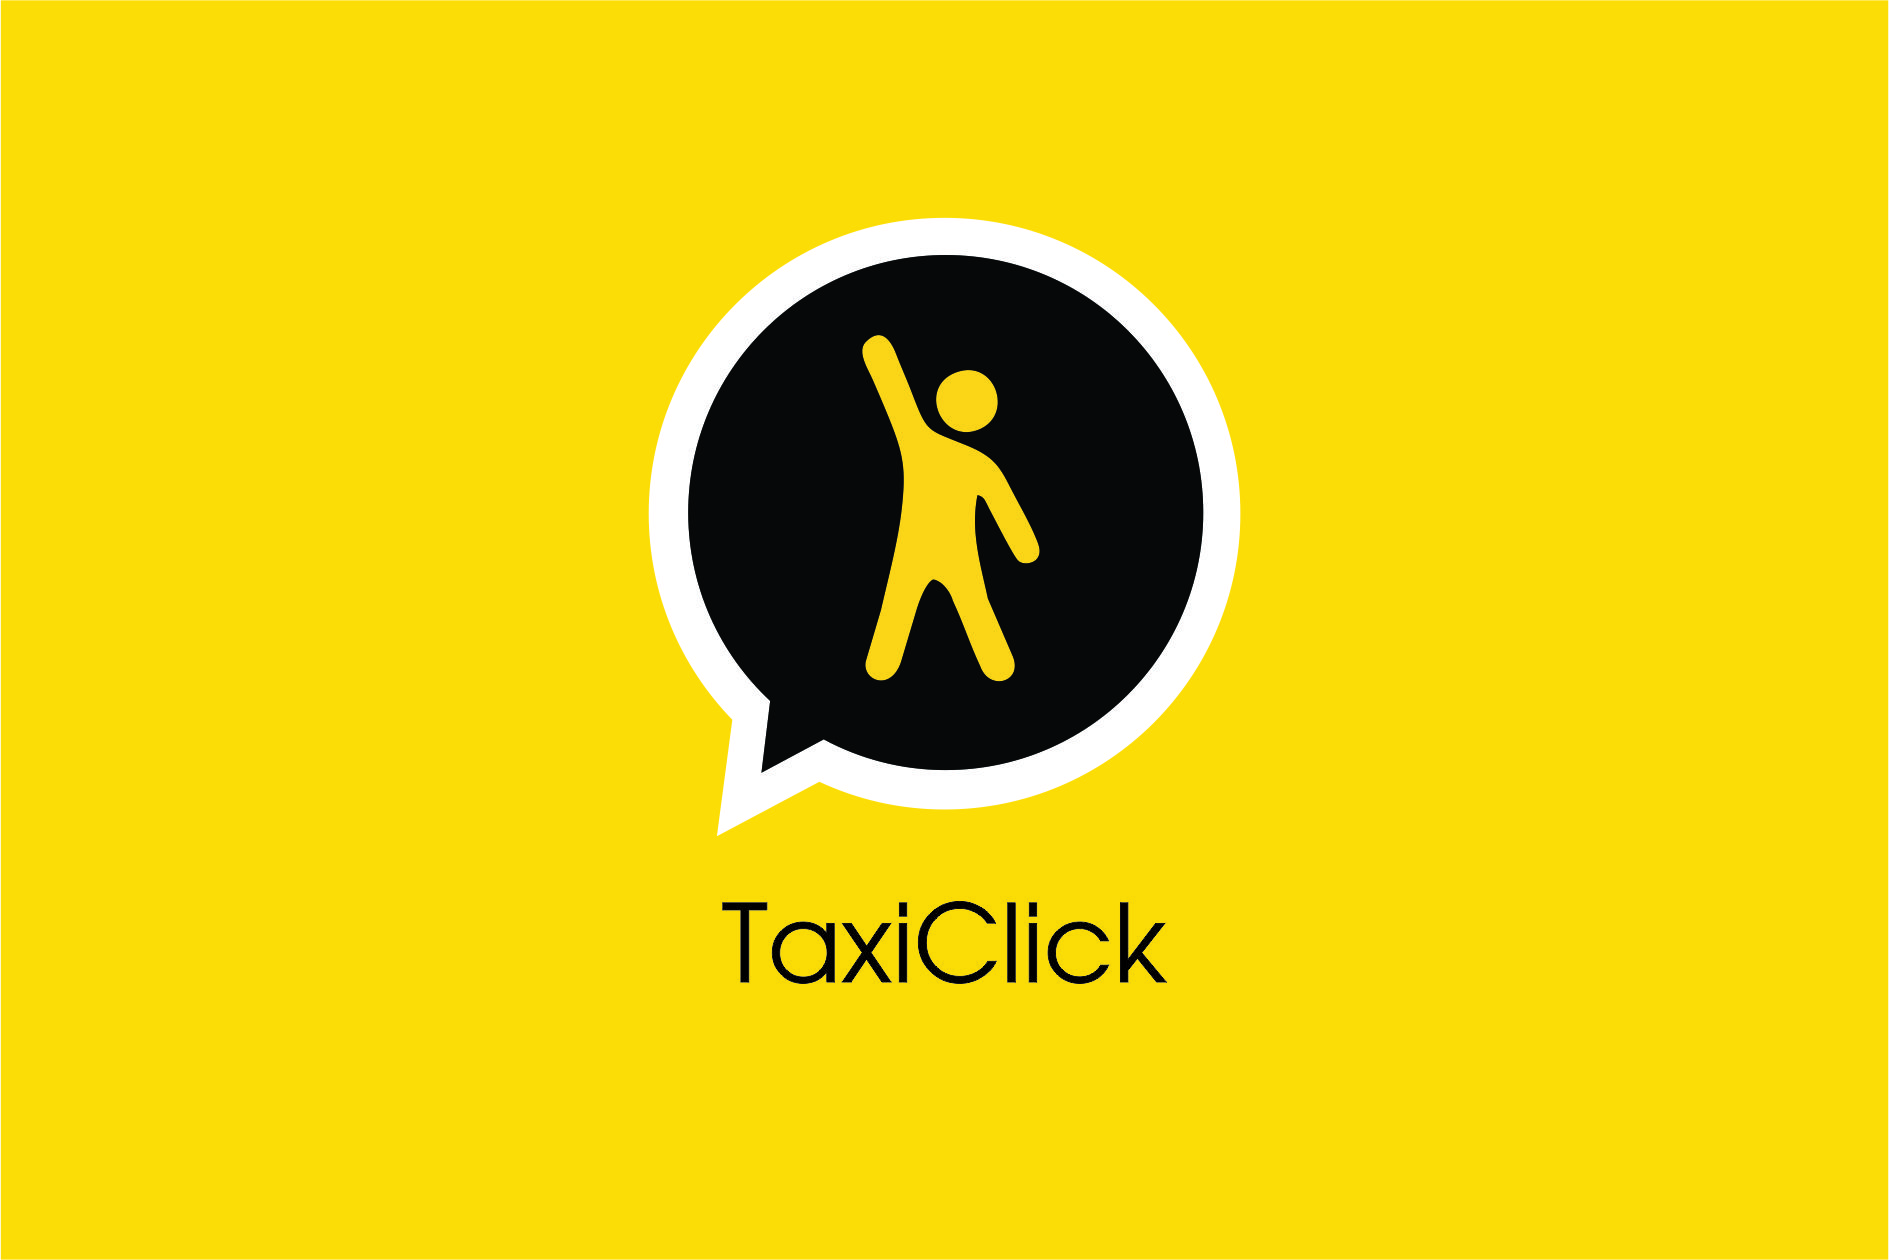 TaxiClick